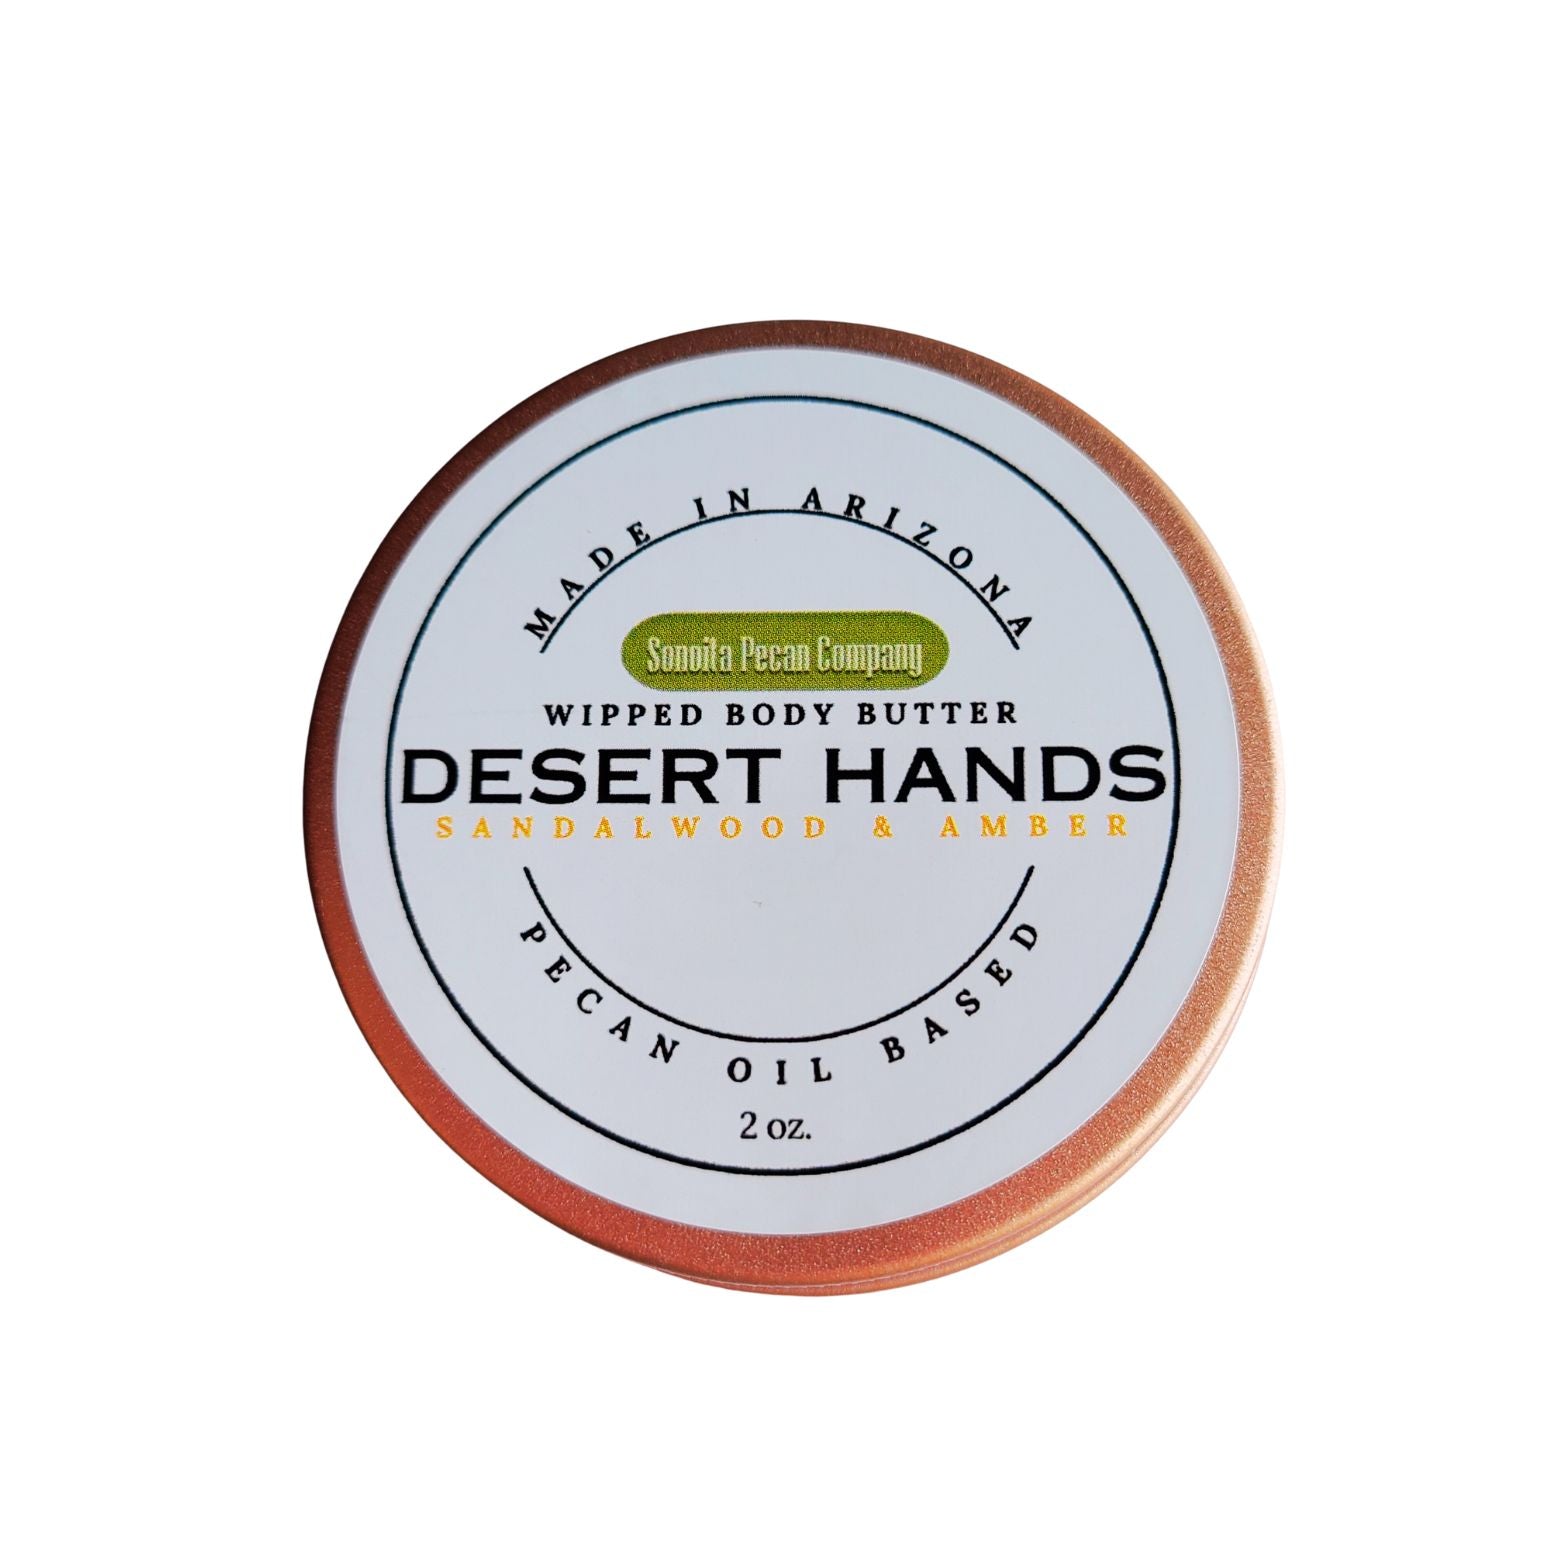 Desert Hands - Sandalwood & Amber